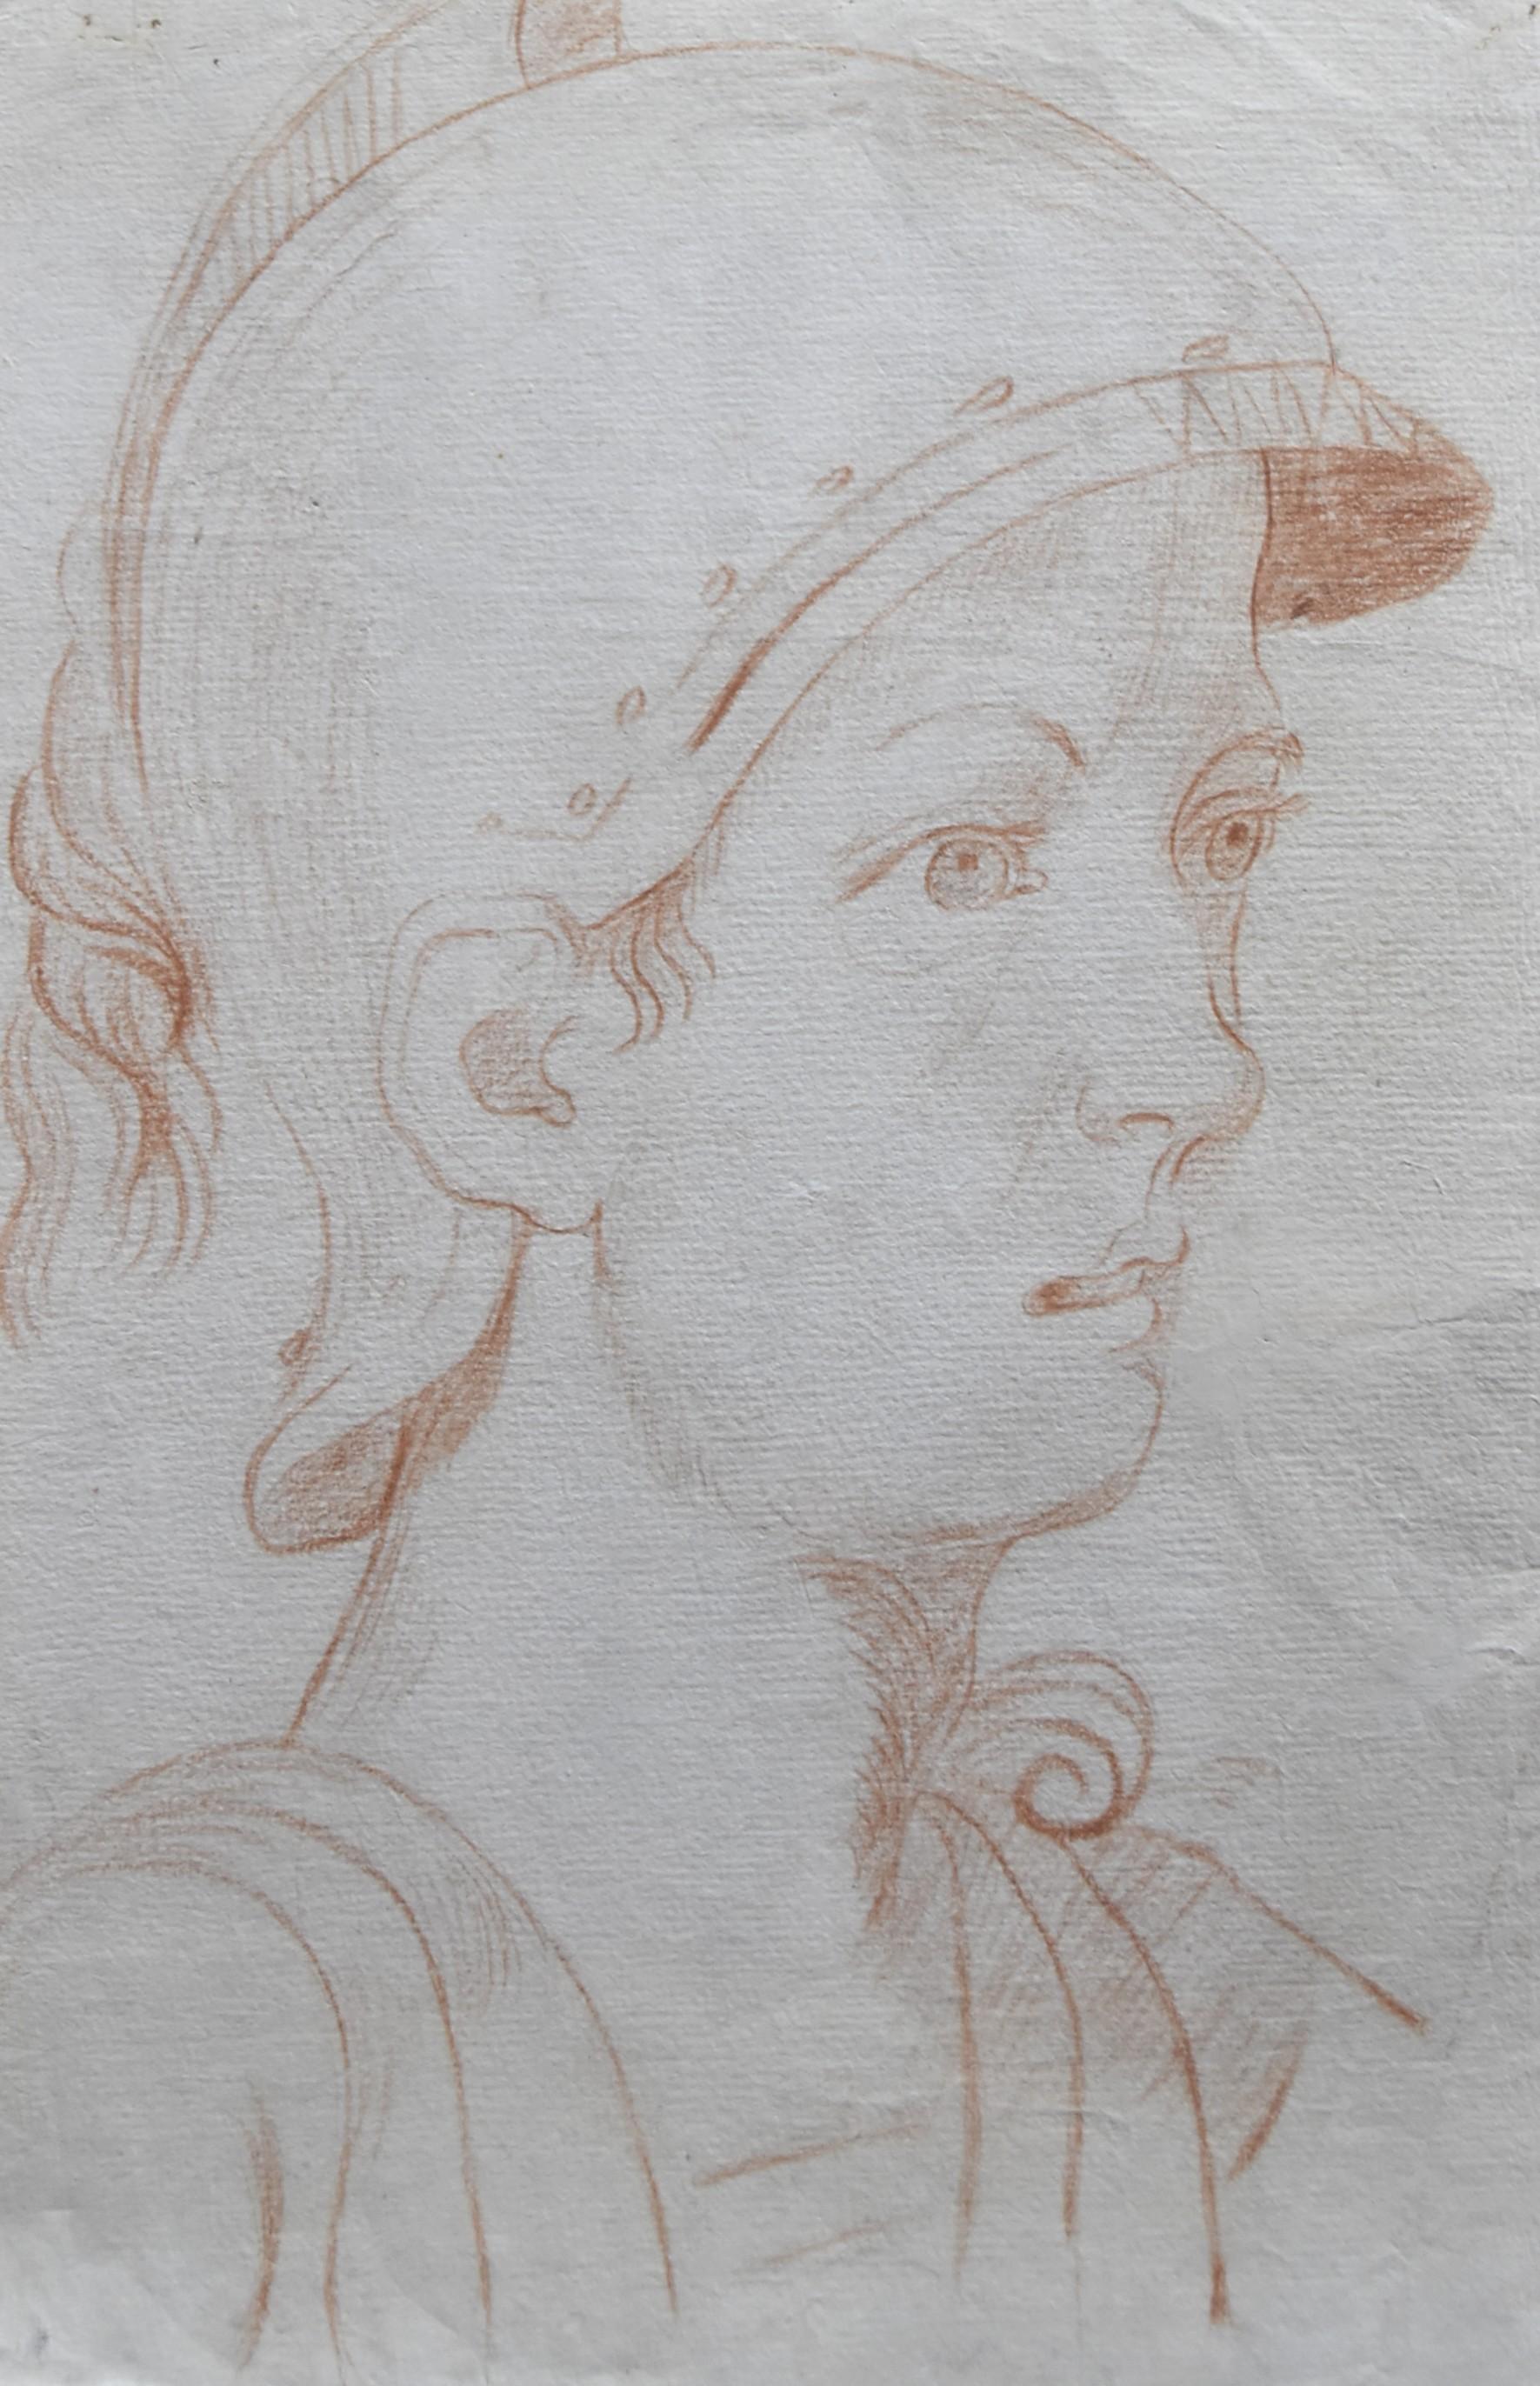 École italienne du XVIIIe siècle,  Un ancien soldat de profil, craie rouge sur papier